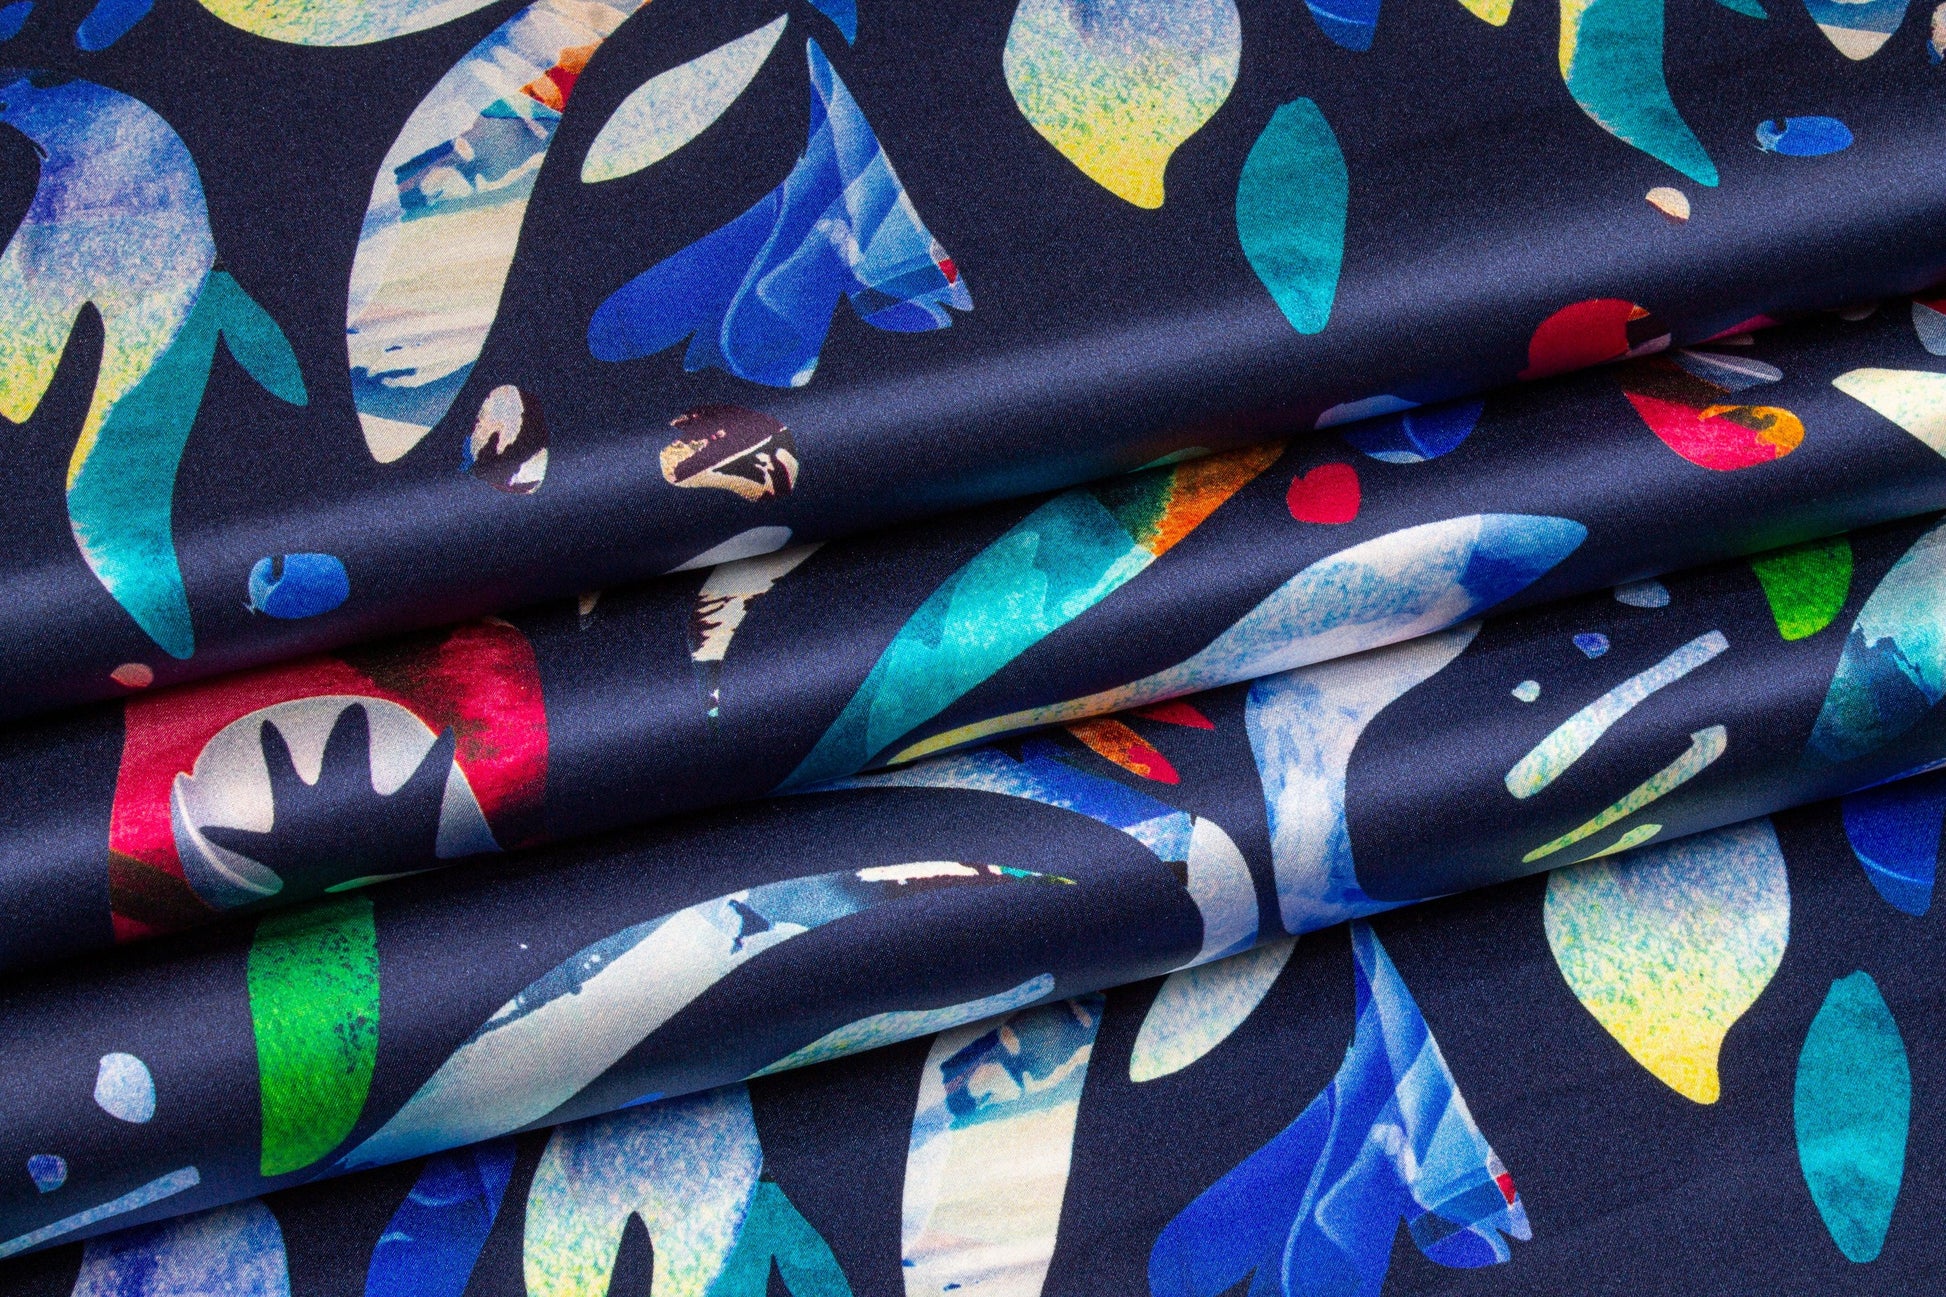 Abstract Italian Silk Charmeuse - Navy - Prime Fabrics